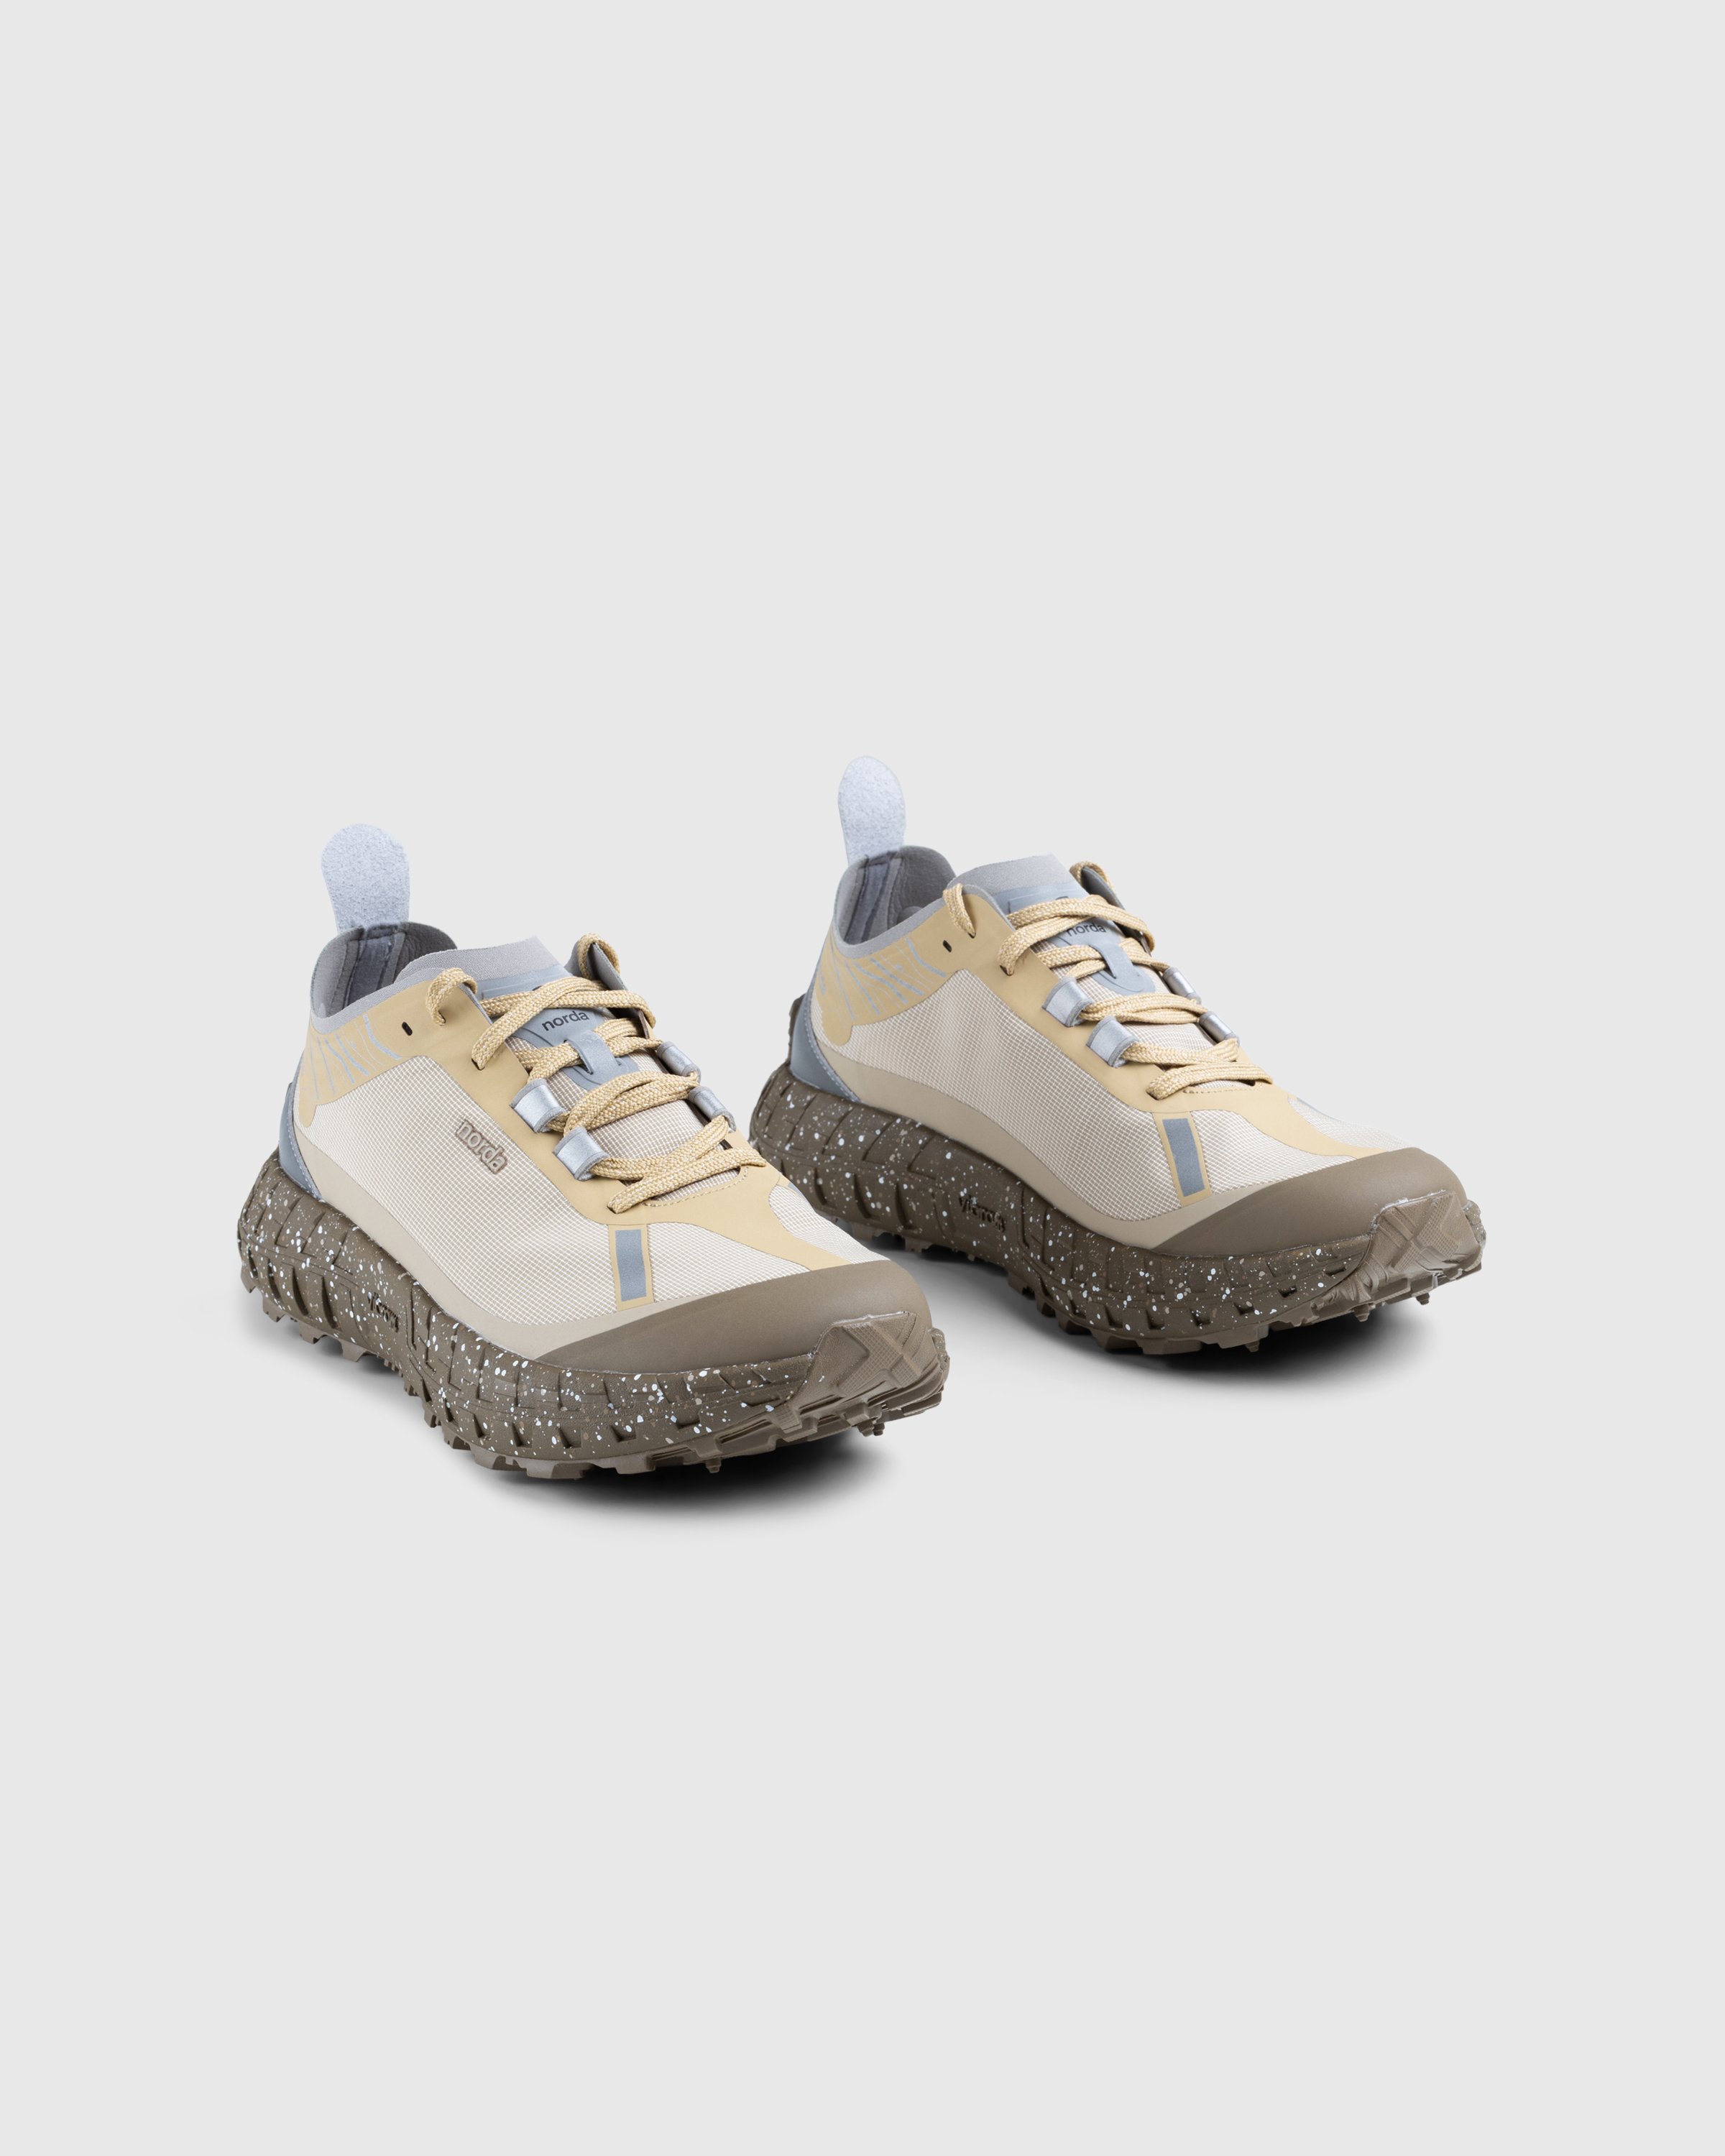 Norda - 001 M Regolith - Footwear - Brown - Image 3